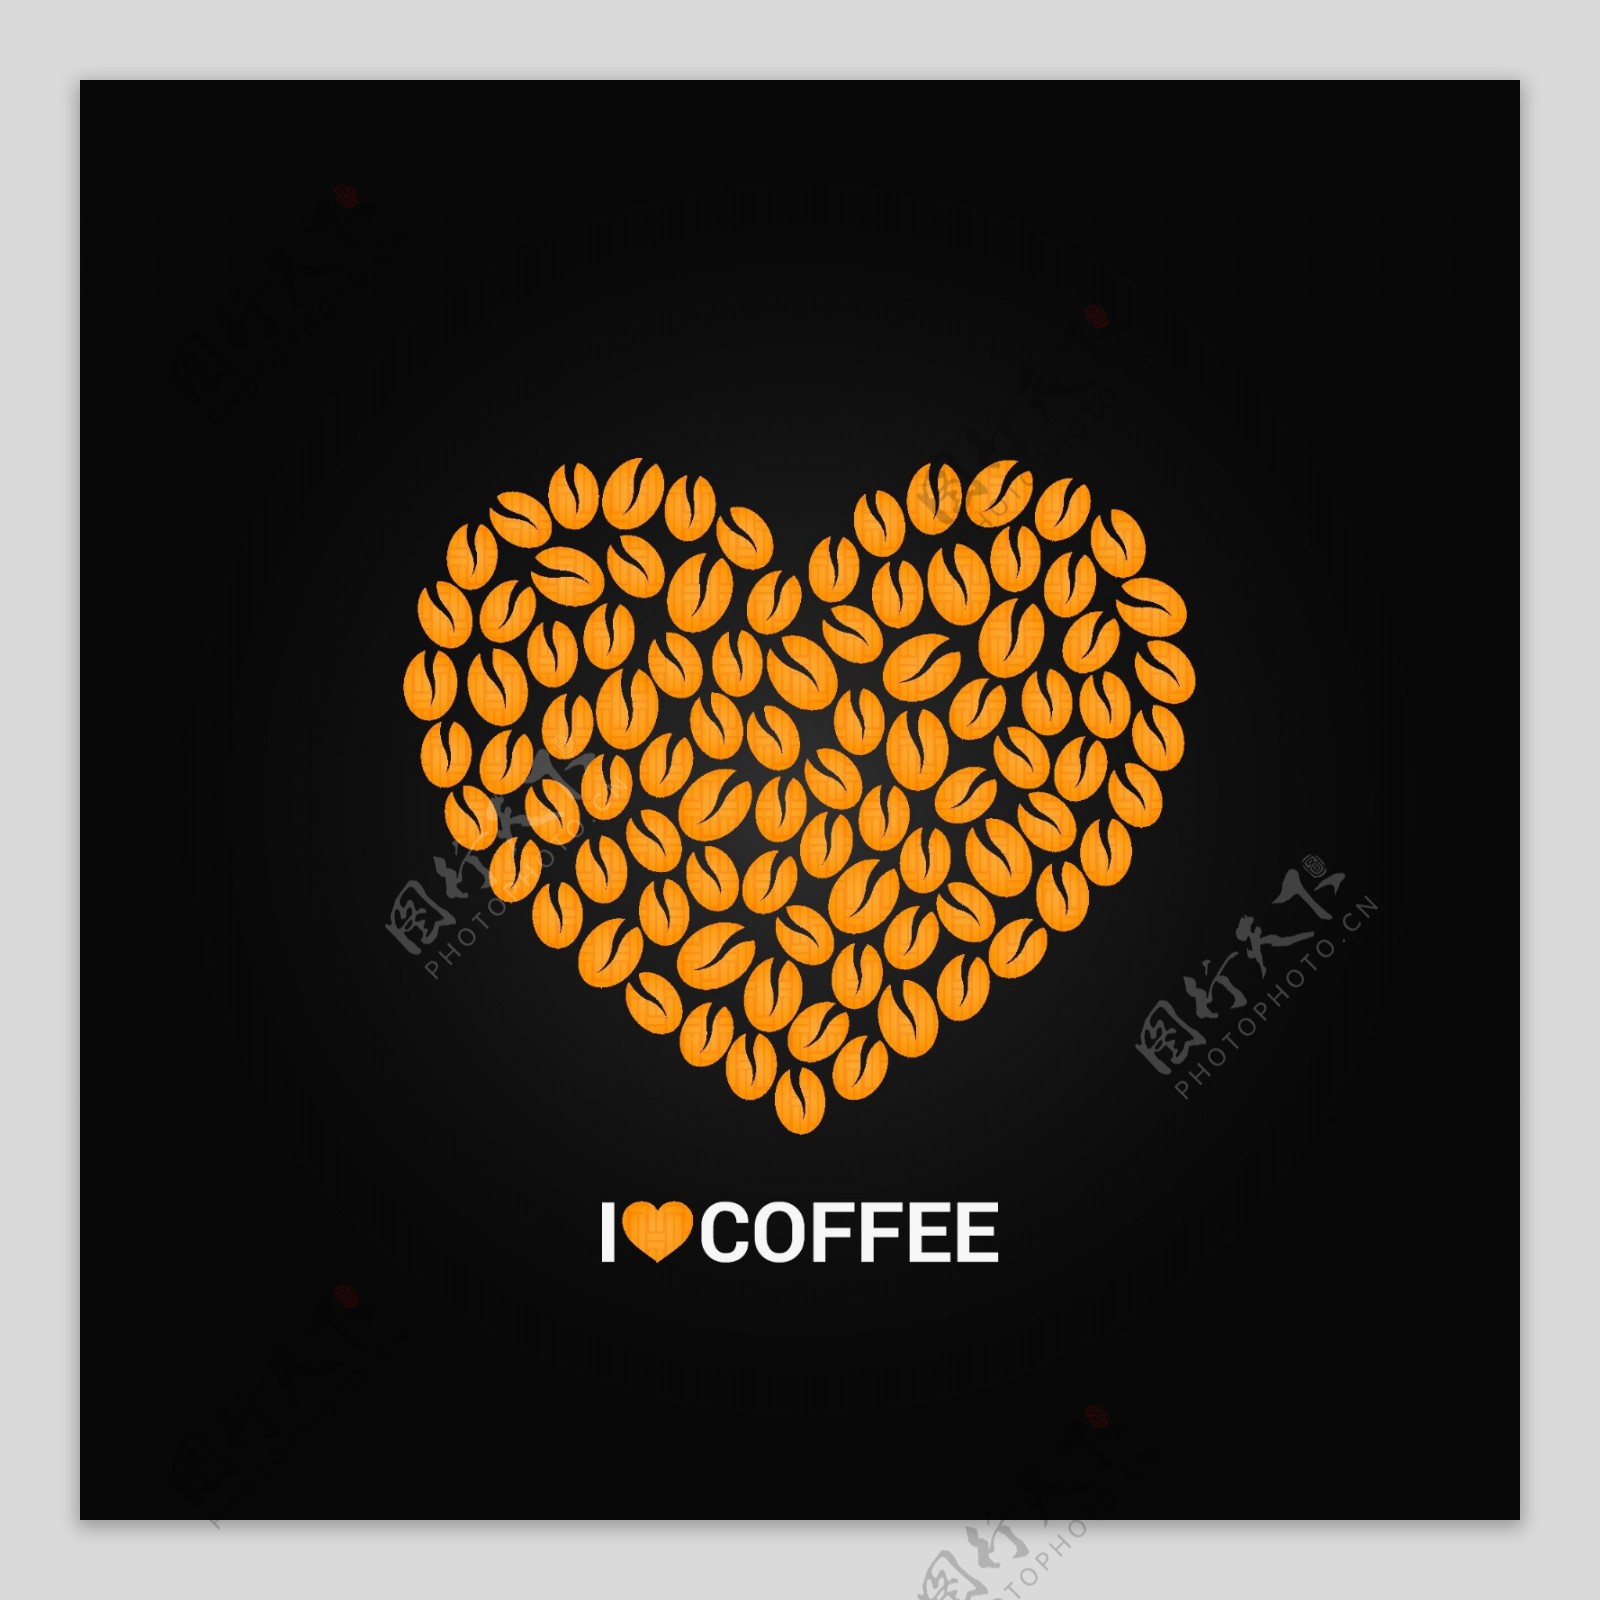 咖啡豆组合爱心矢量素材